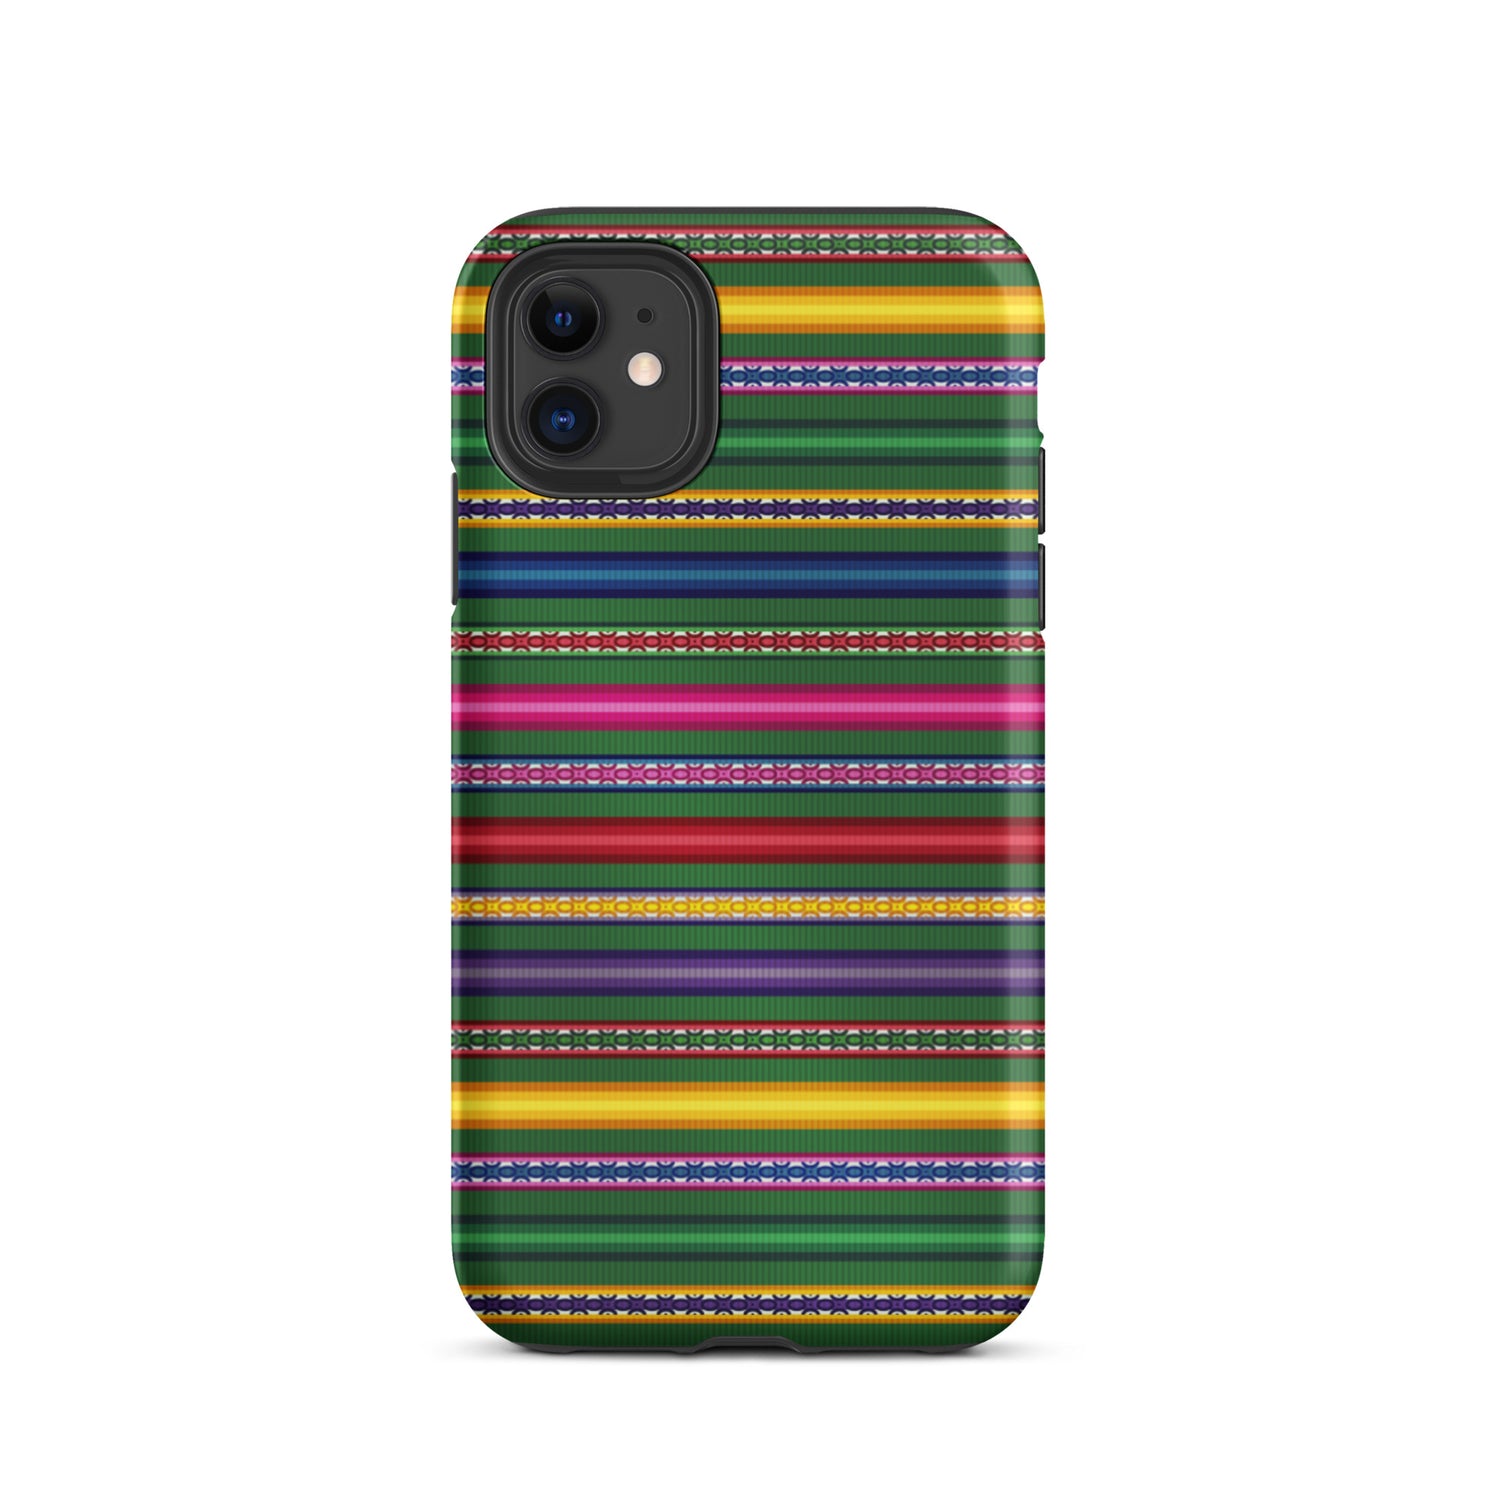 Peruvian Tough iPhone 11 case